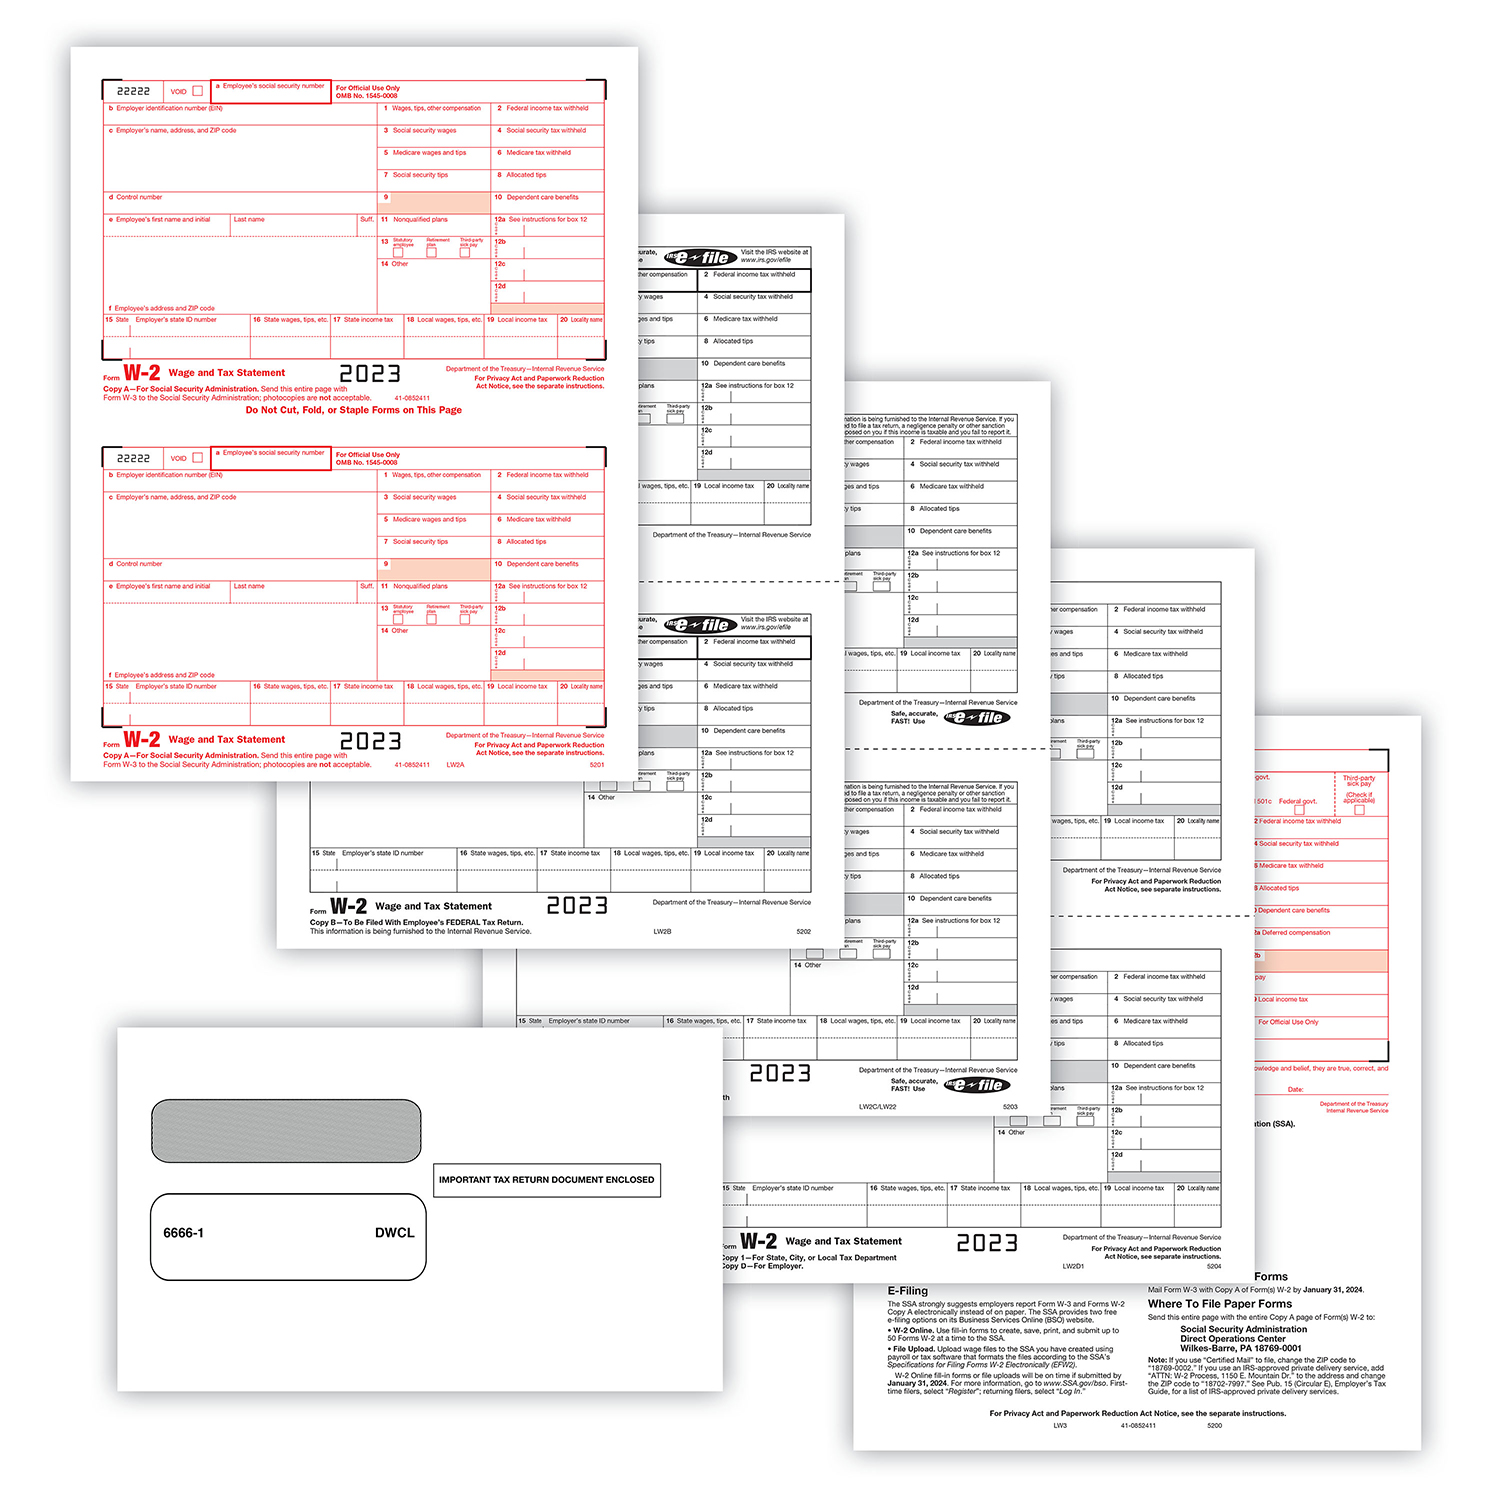 Picture of W-2 Set, Copy A,B,C,D,1,1,2,2 w/ Envelopes (DWCL) (100 Employees/Recipients)